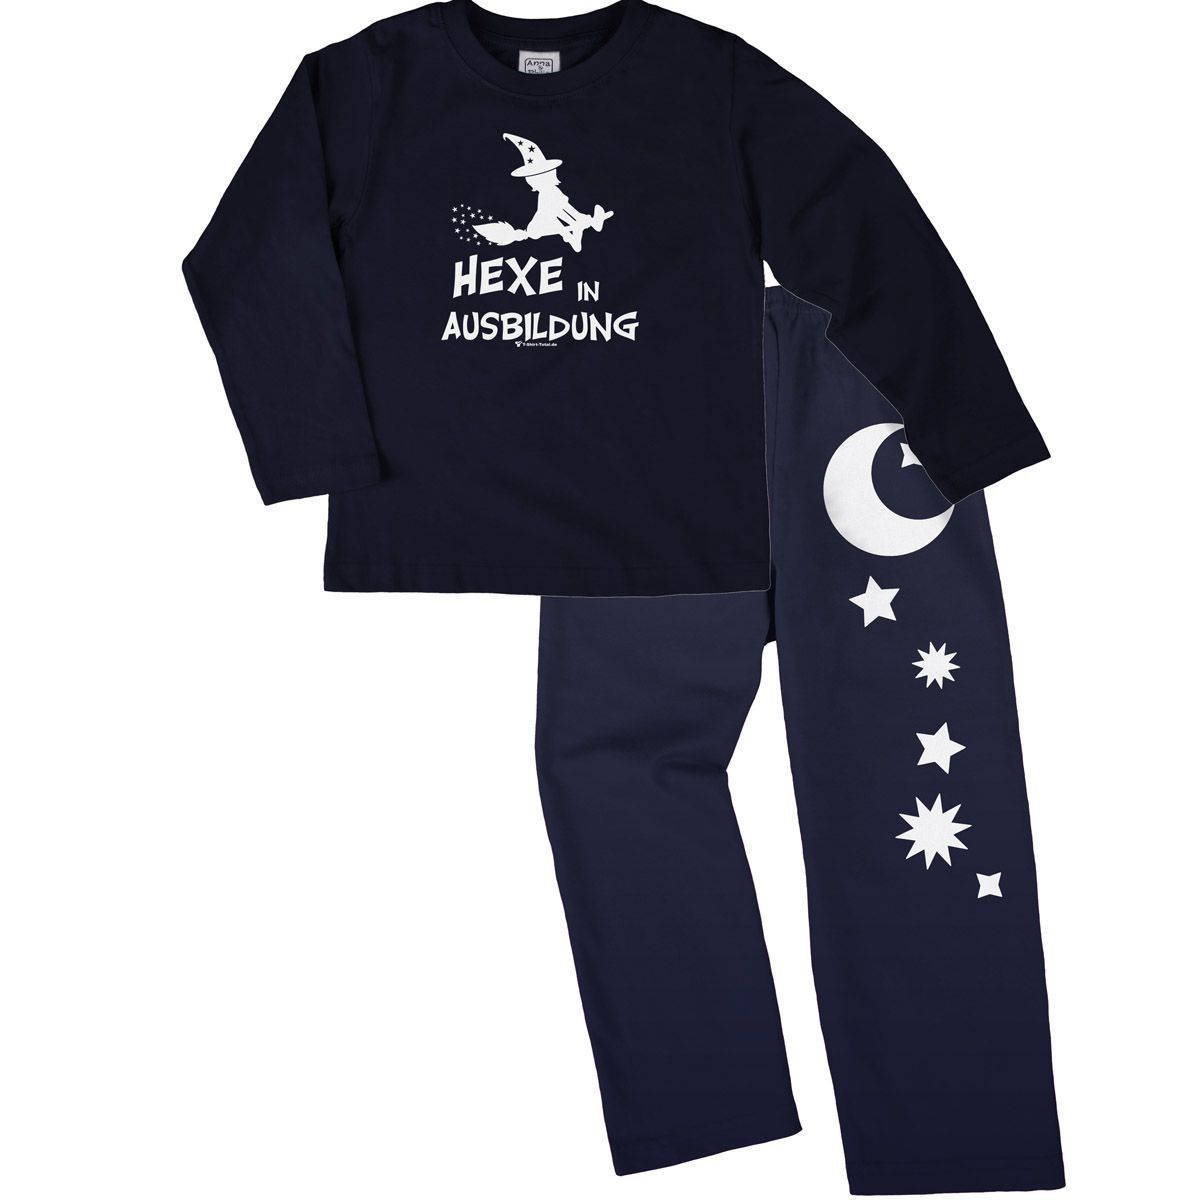 Hexe in Ausbildung Pyjama Set navy / navy 68 / 74